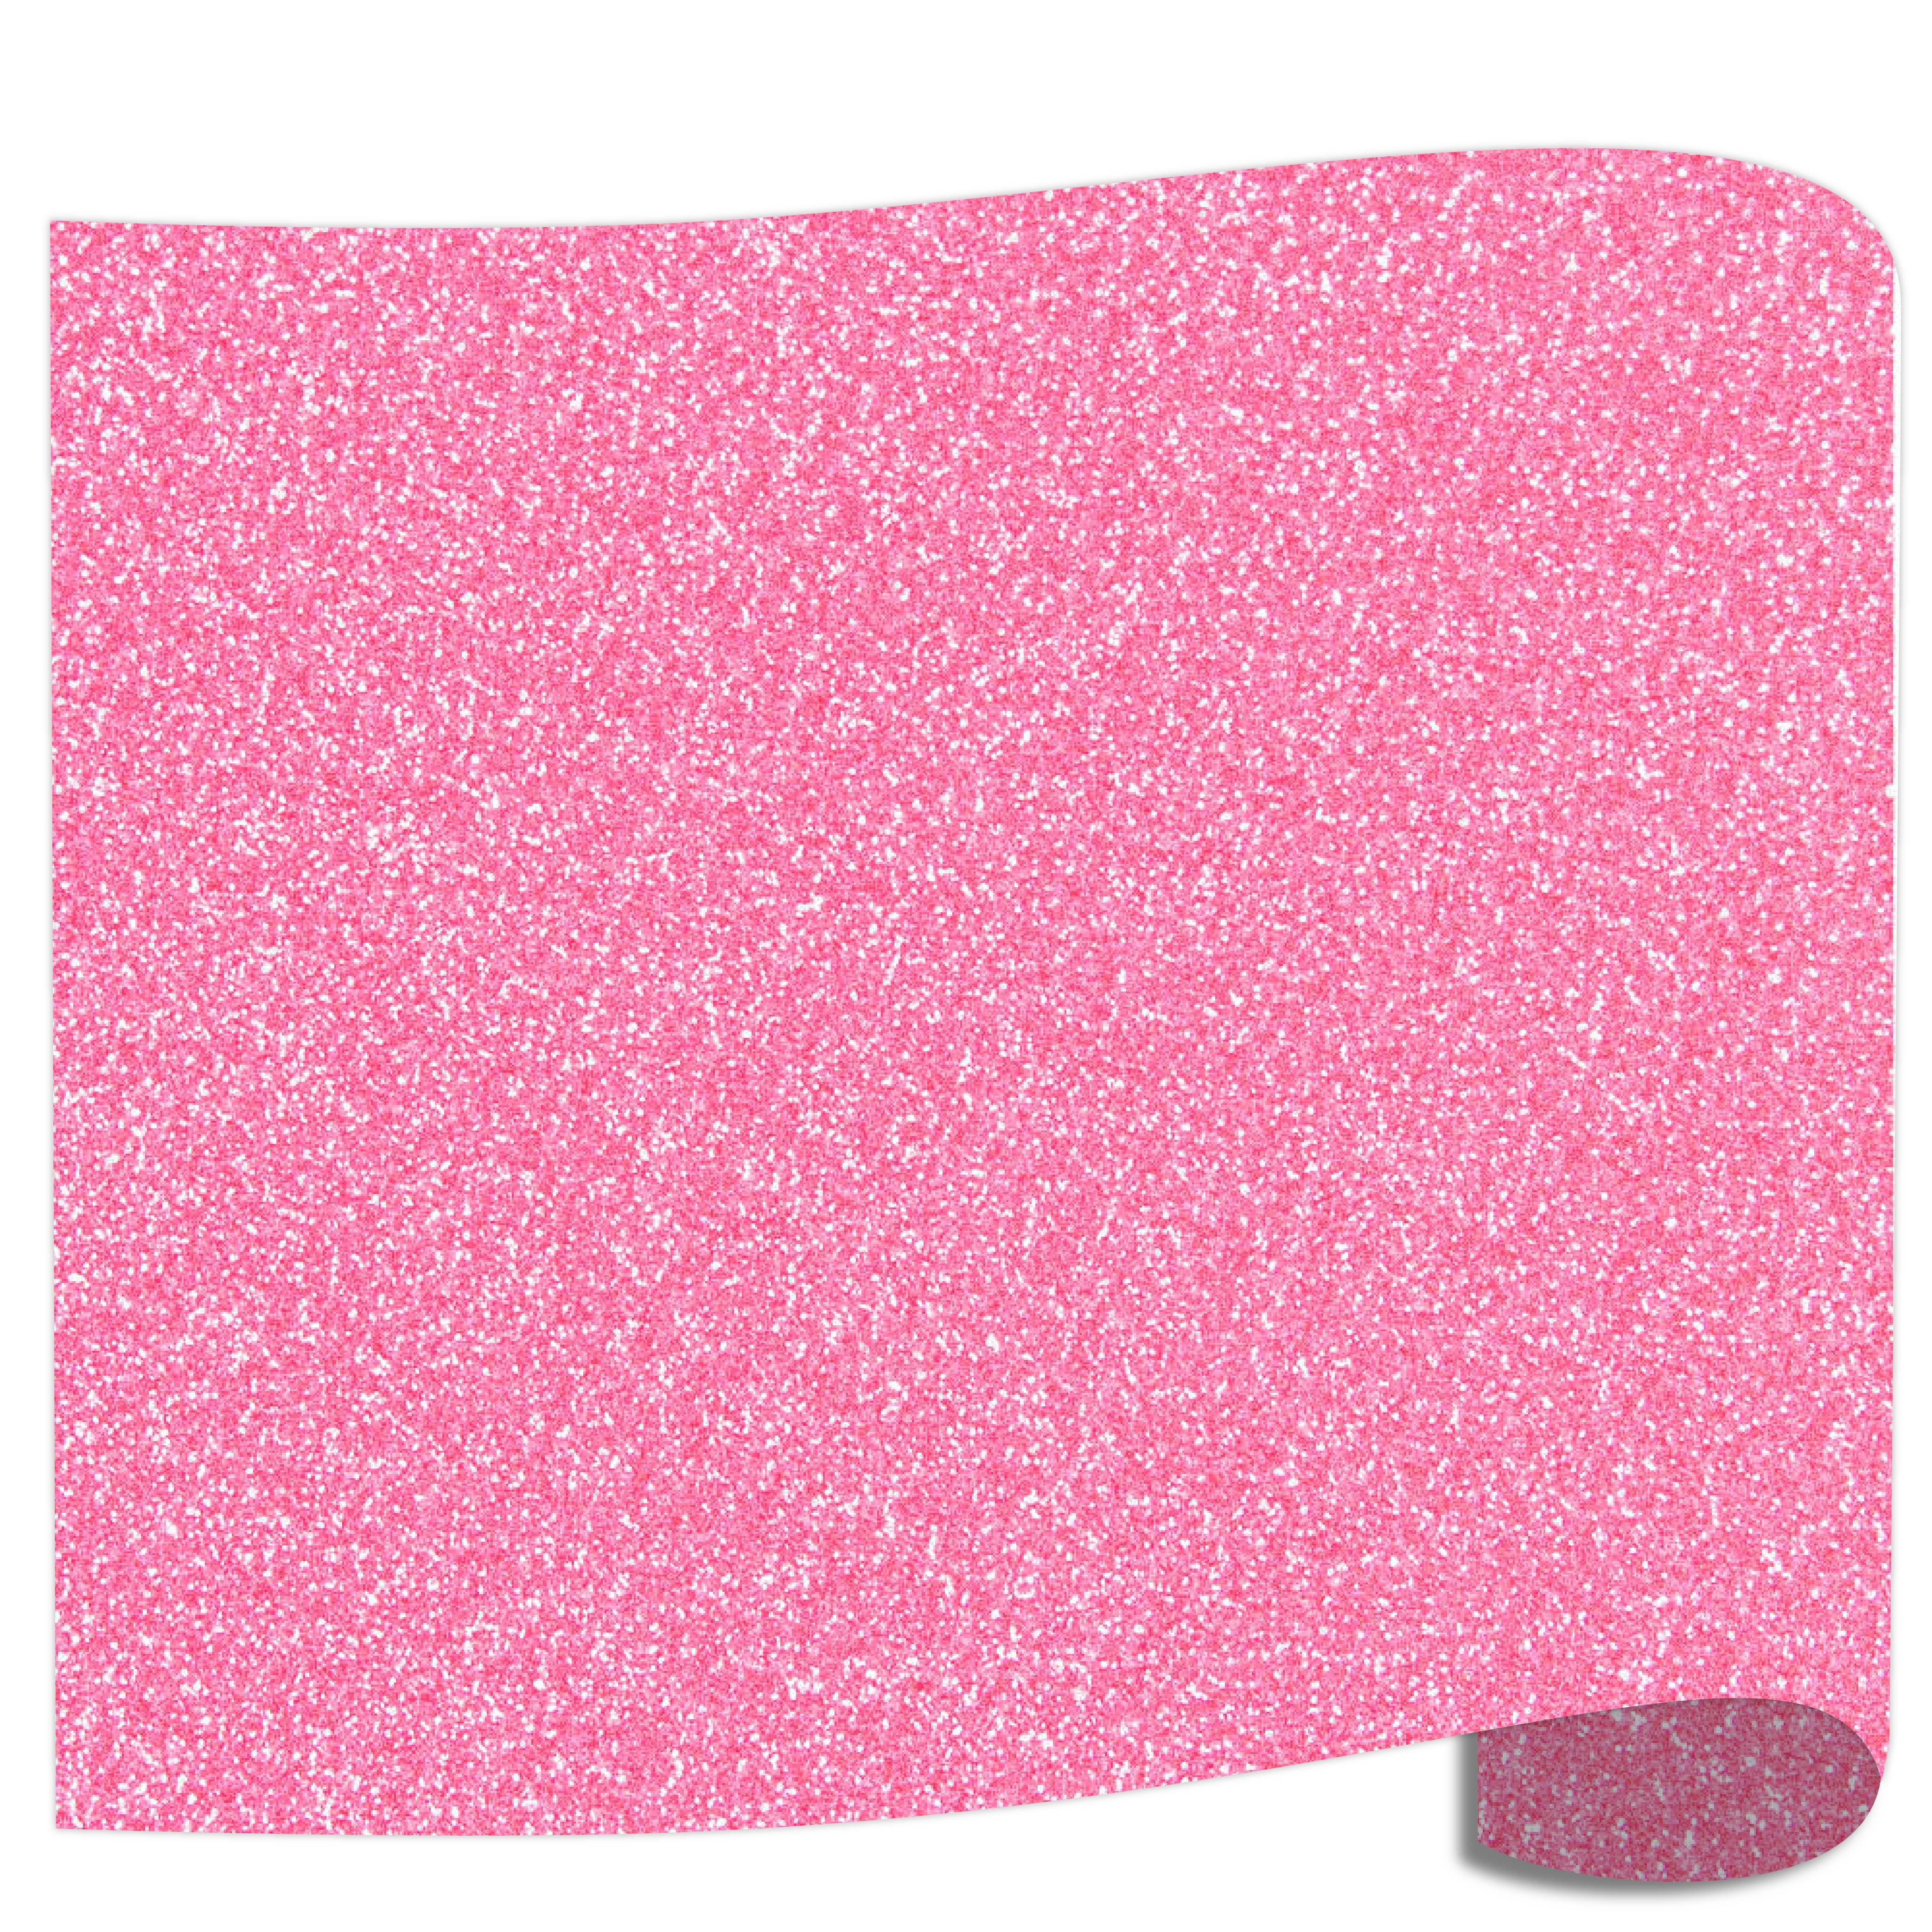 Siser Glitter Heat Transfer Vinyl (HTV) - Translucent Pink